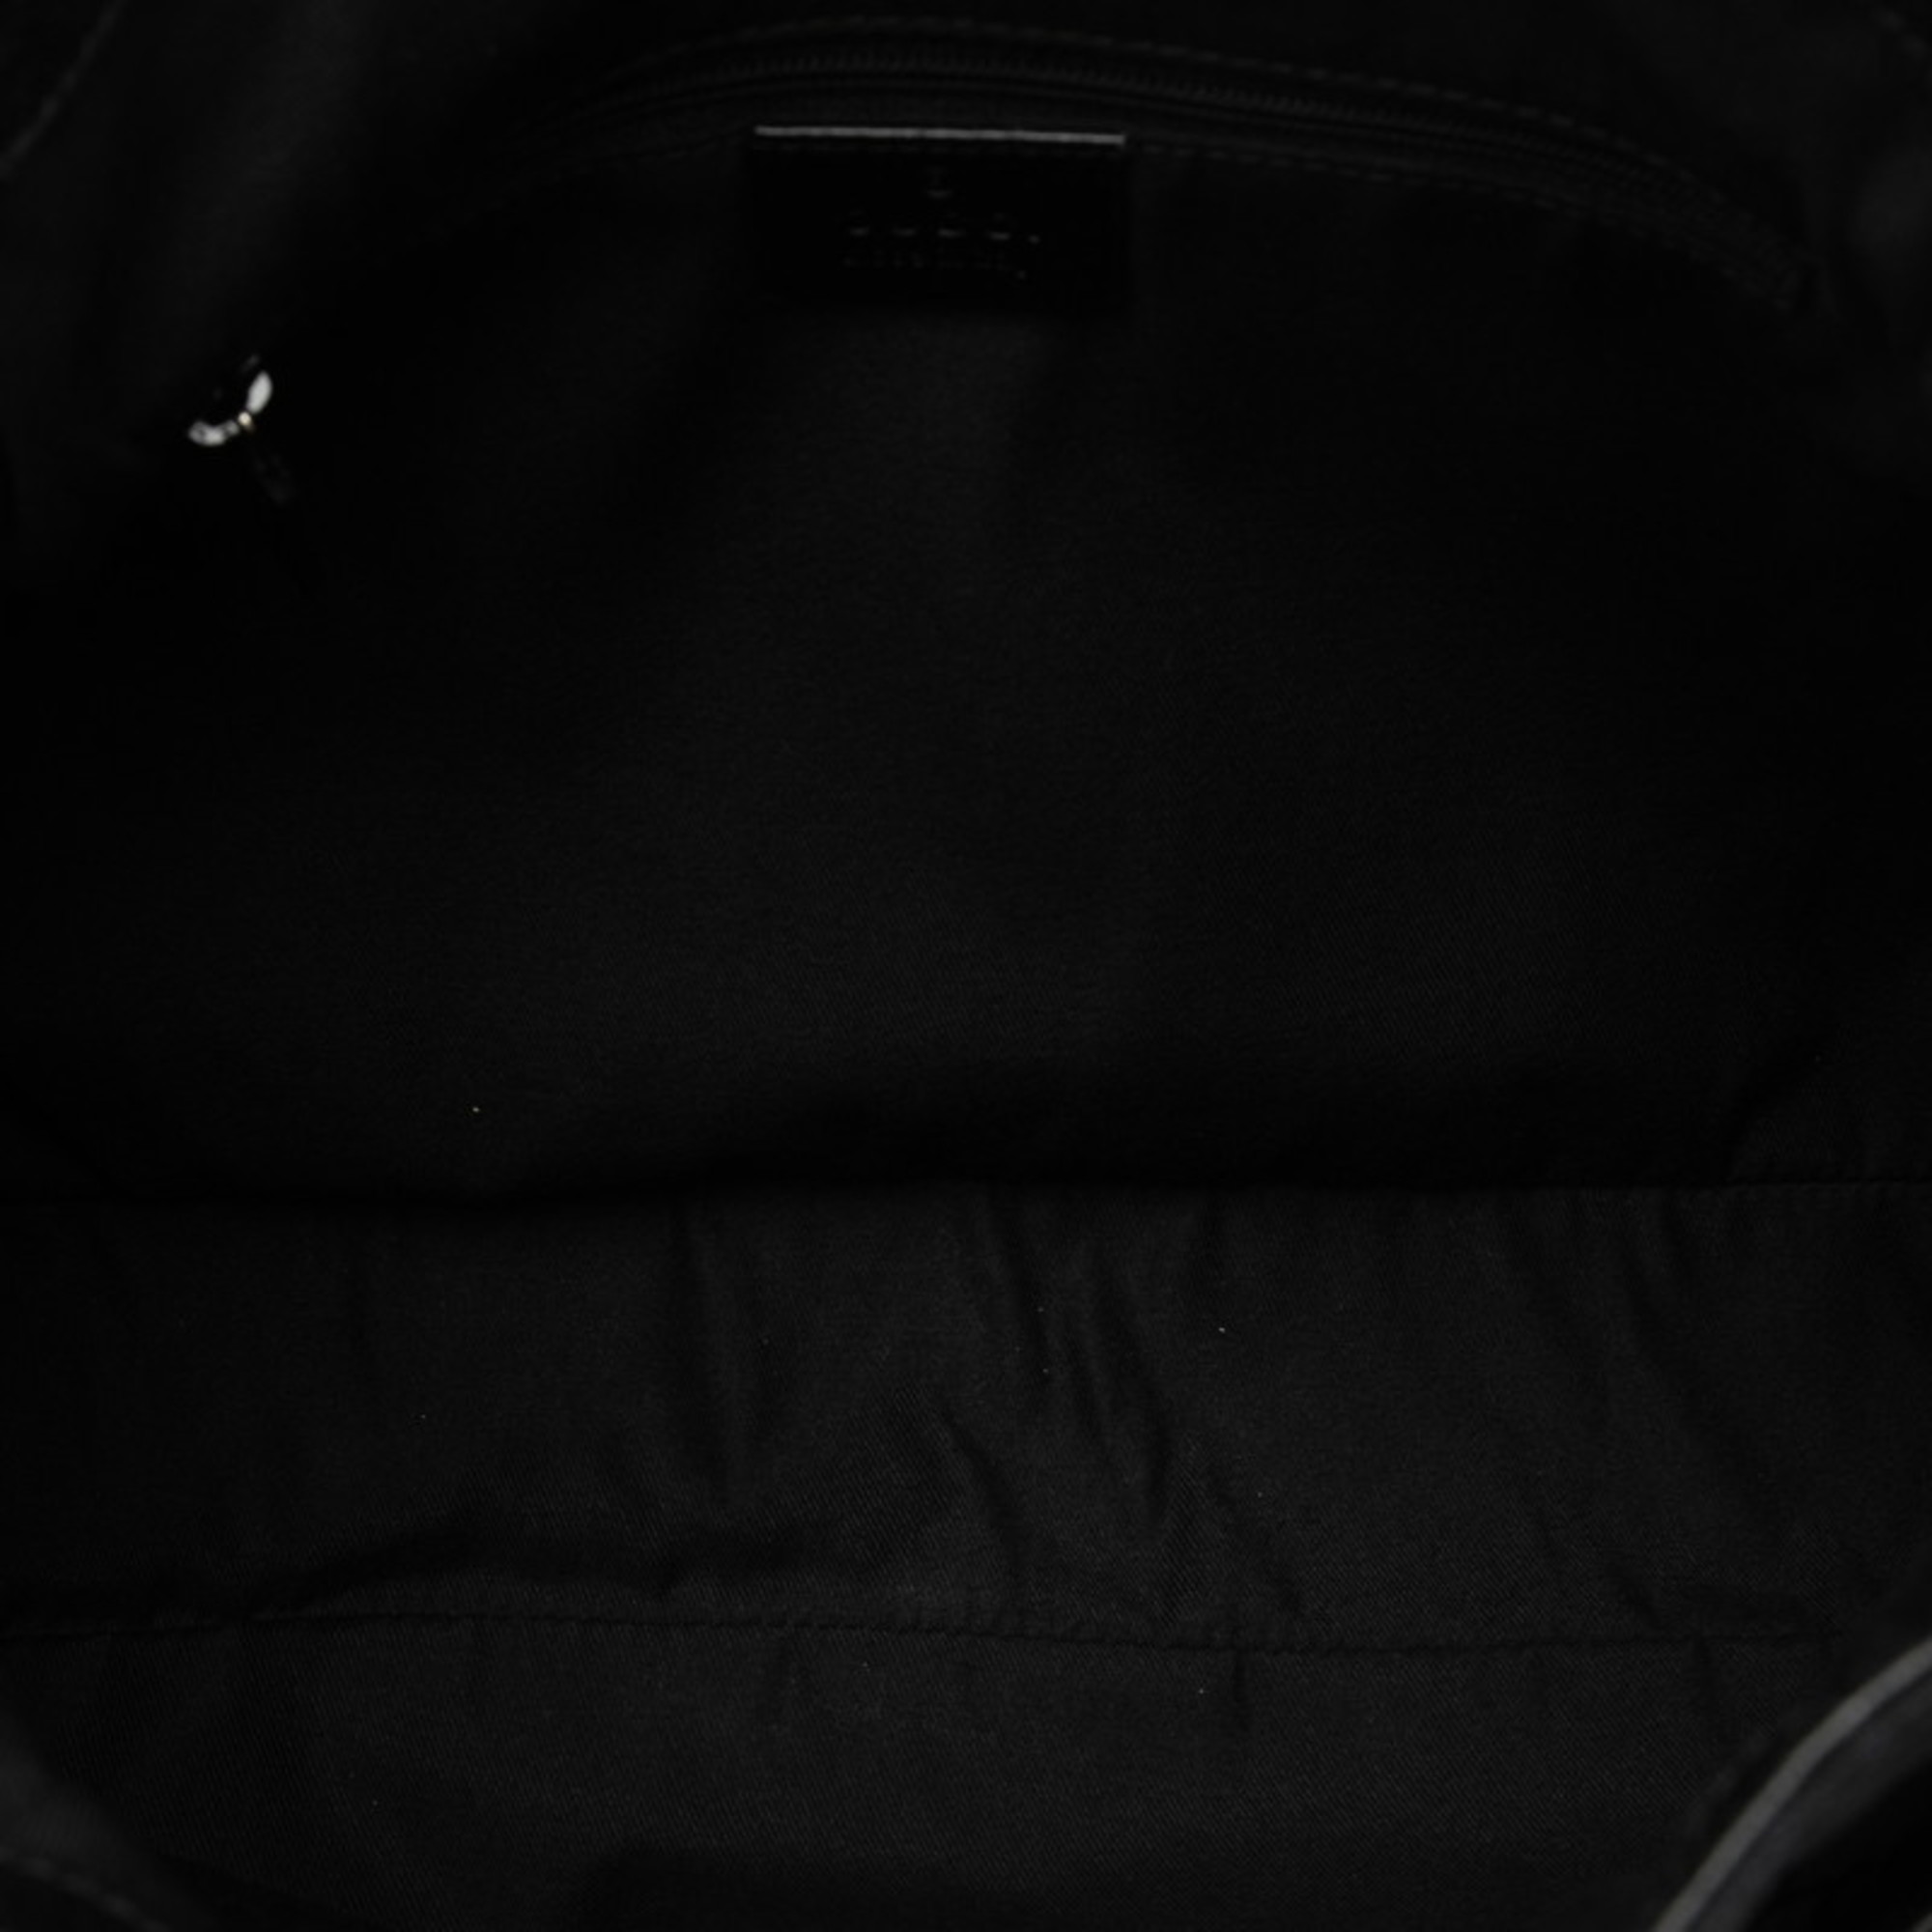 Gucci GG Canvas Handbag Tote Bag 121023 Black Leather Women's GUCCI